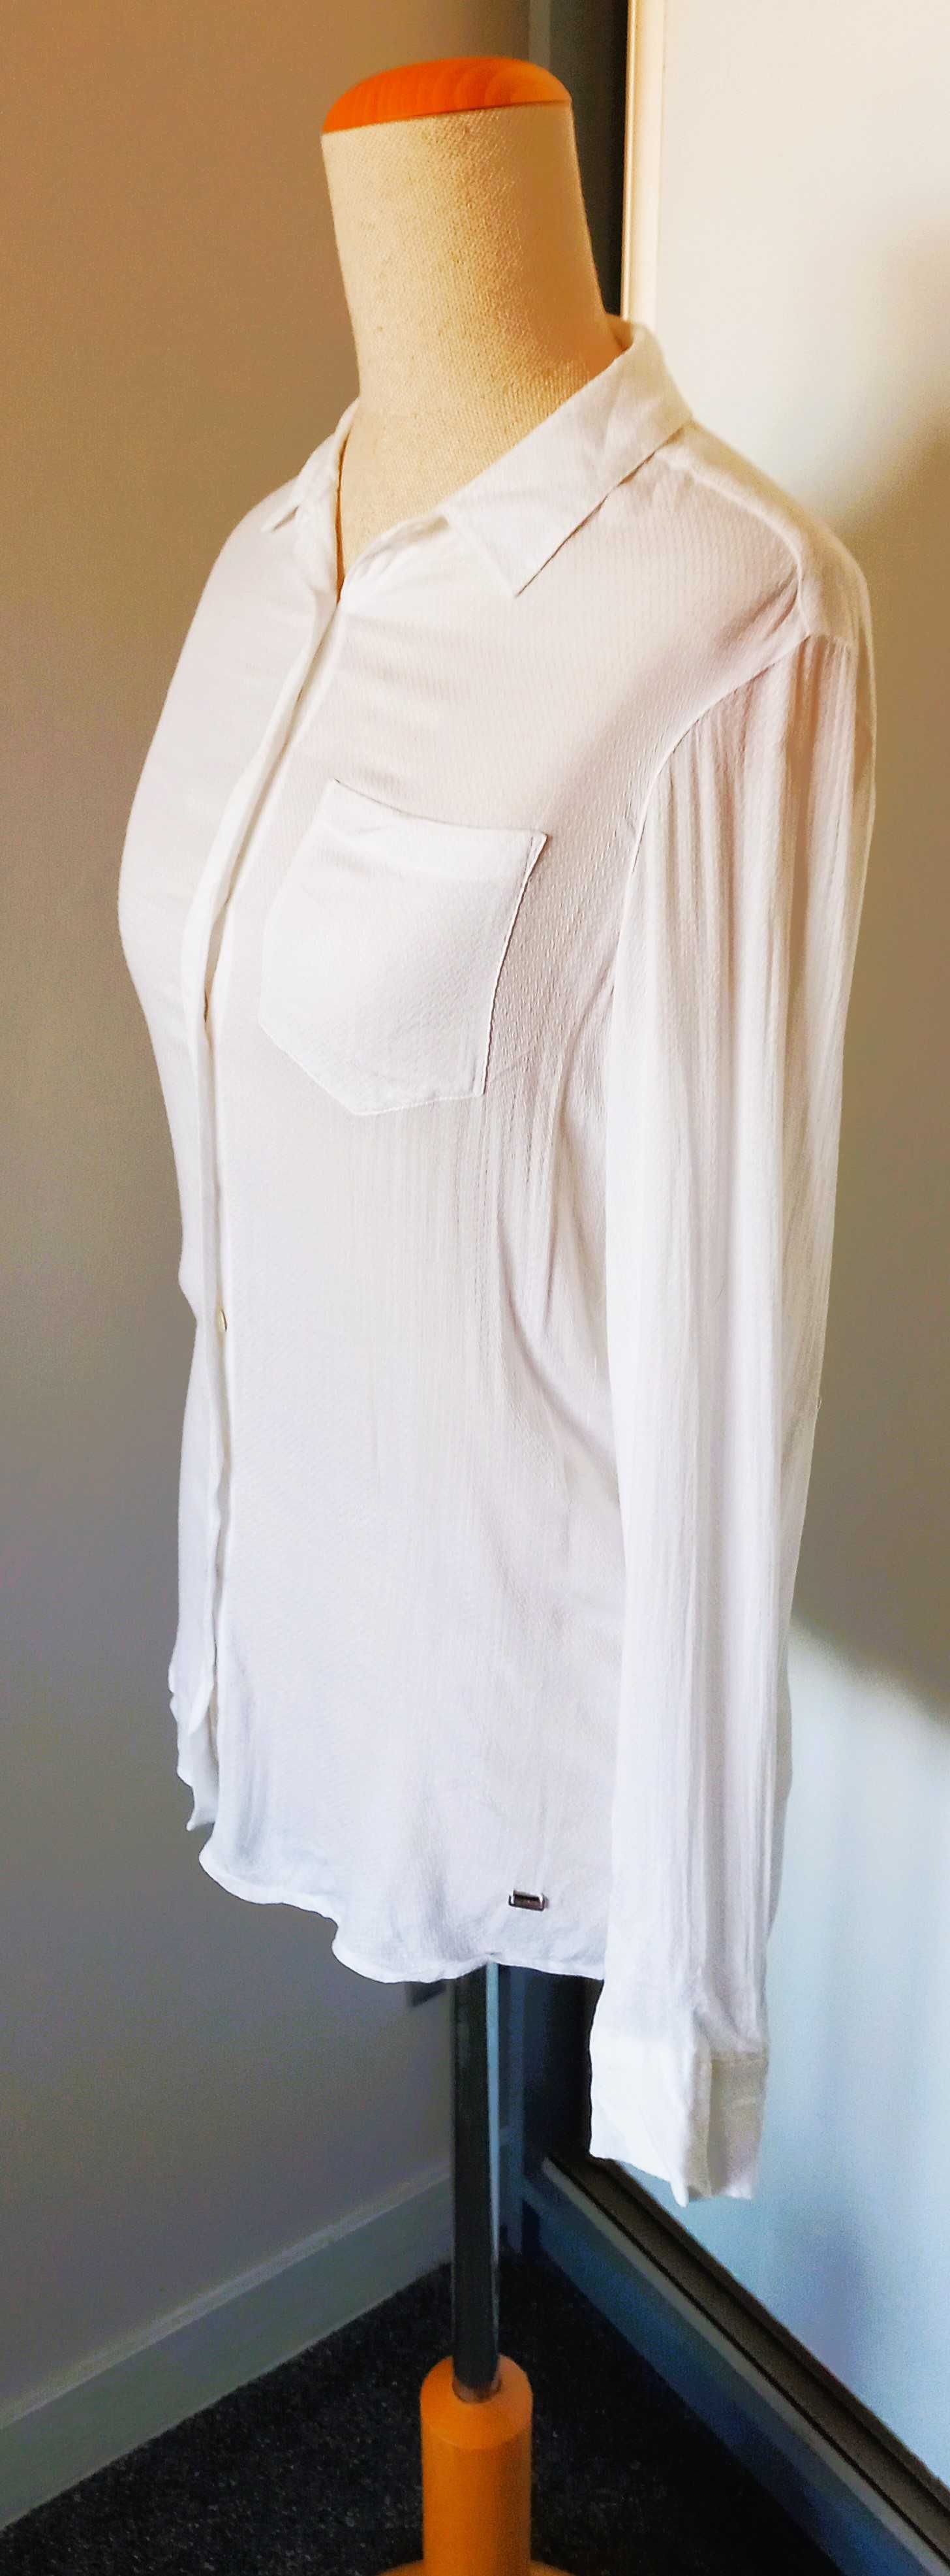 Klasyczna biała koszula damska Tommy Hilfiger 2 S 36 Płock • OLX.pl